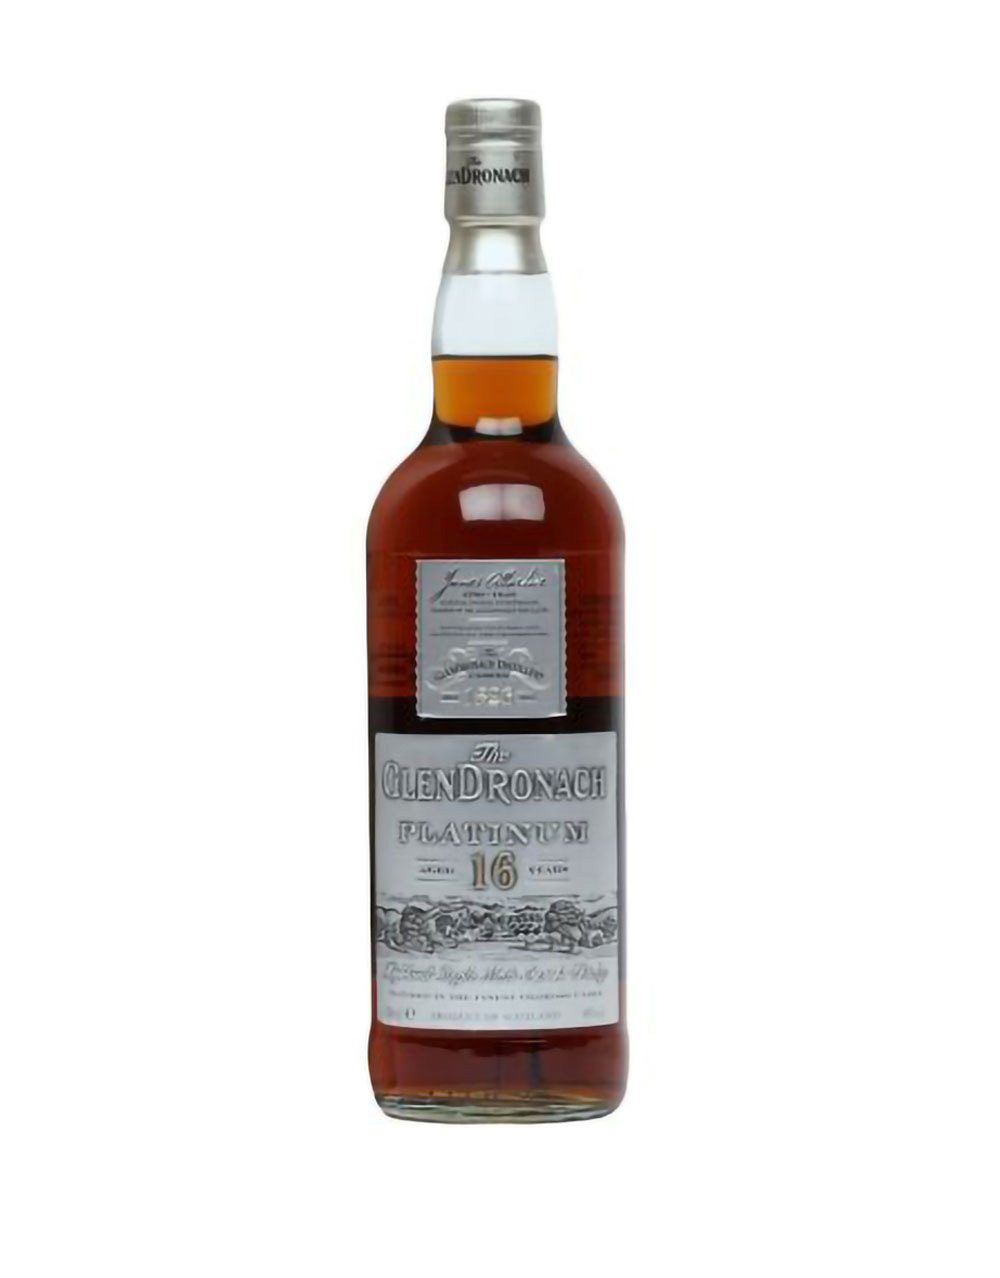 The Glendronach 16 Year Old Single Malt Scotch Whisky